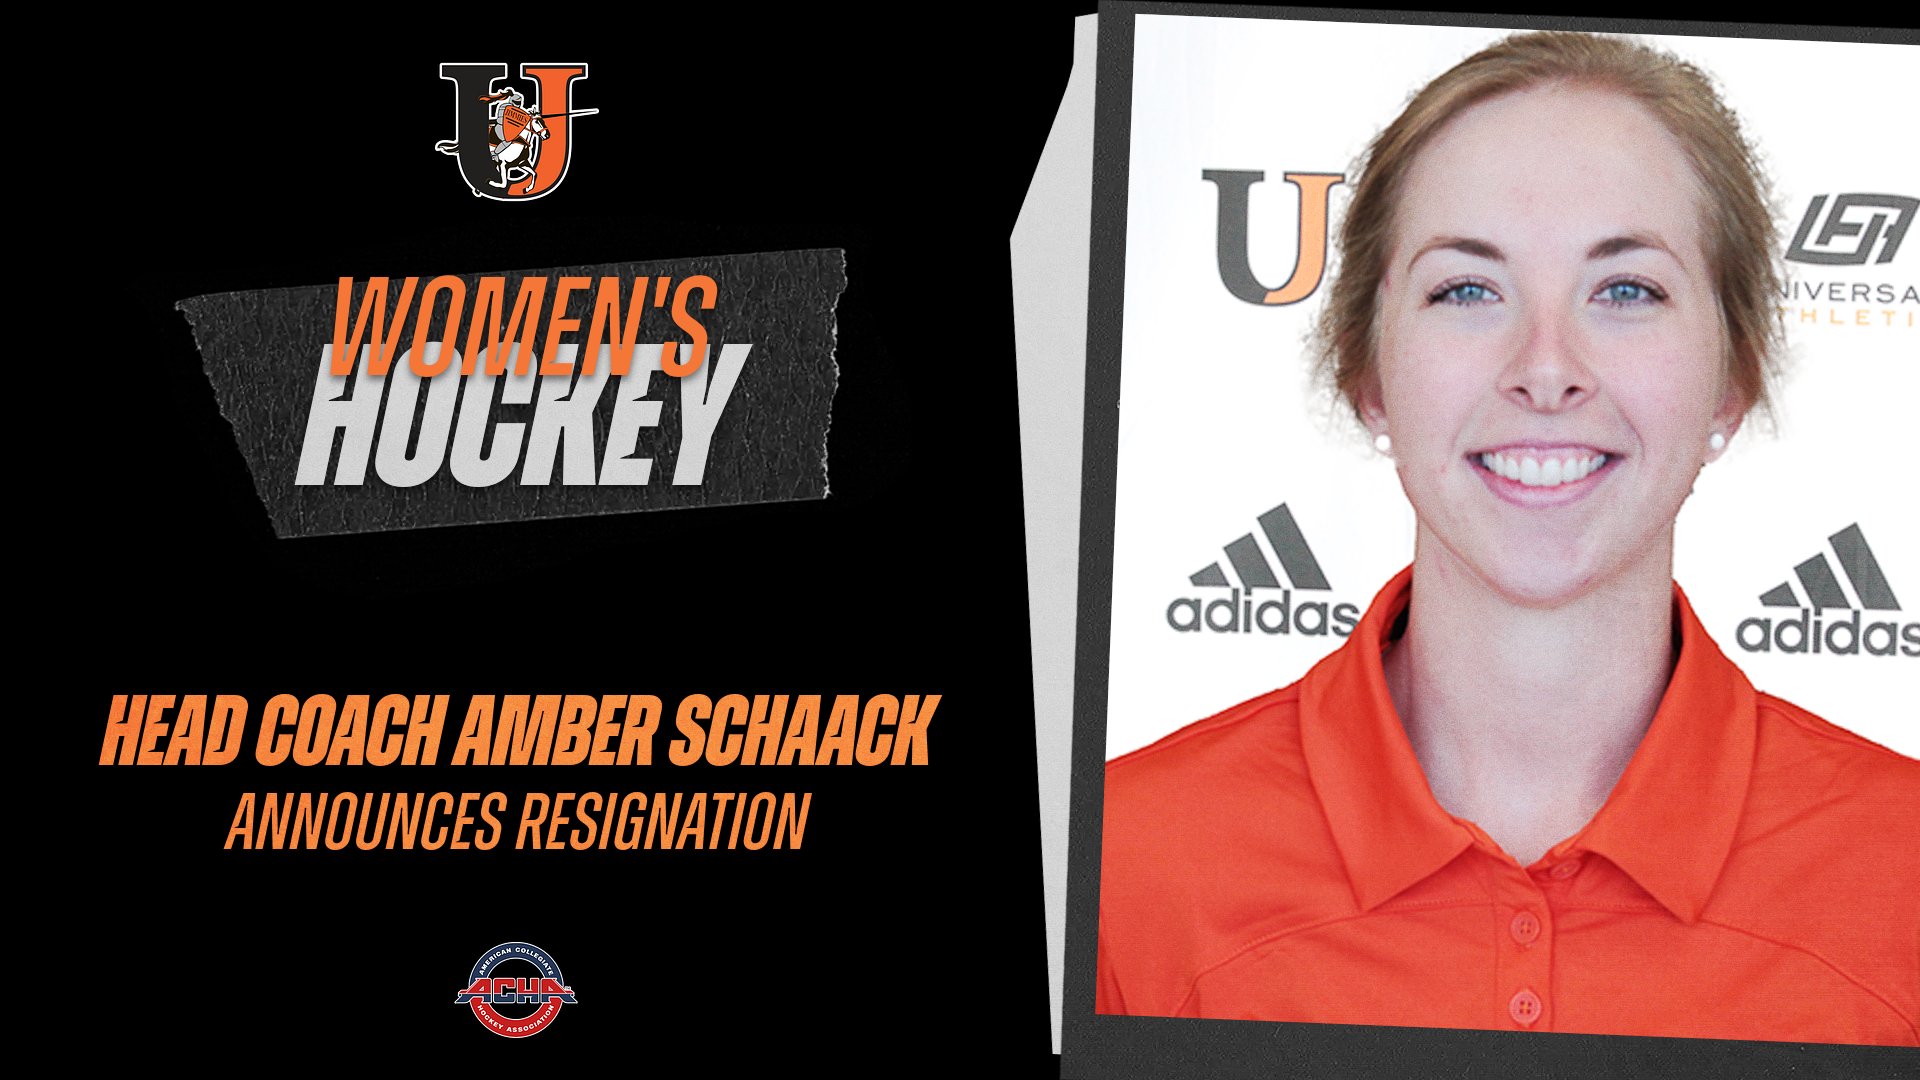 Schaack resigns as head women's hockey coach